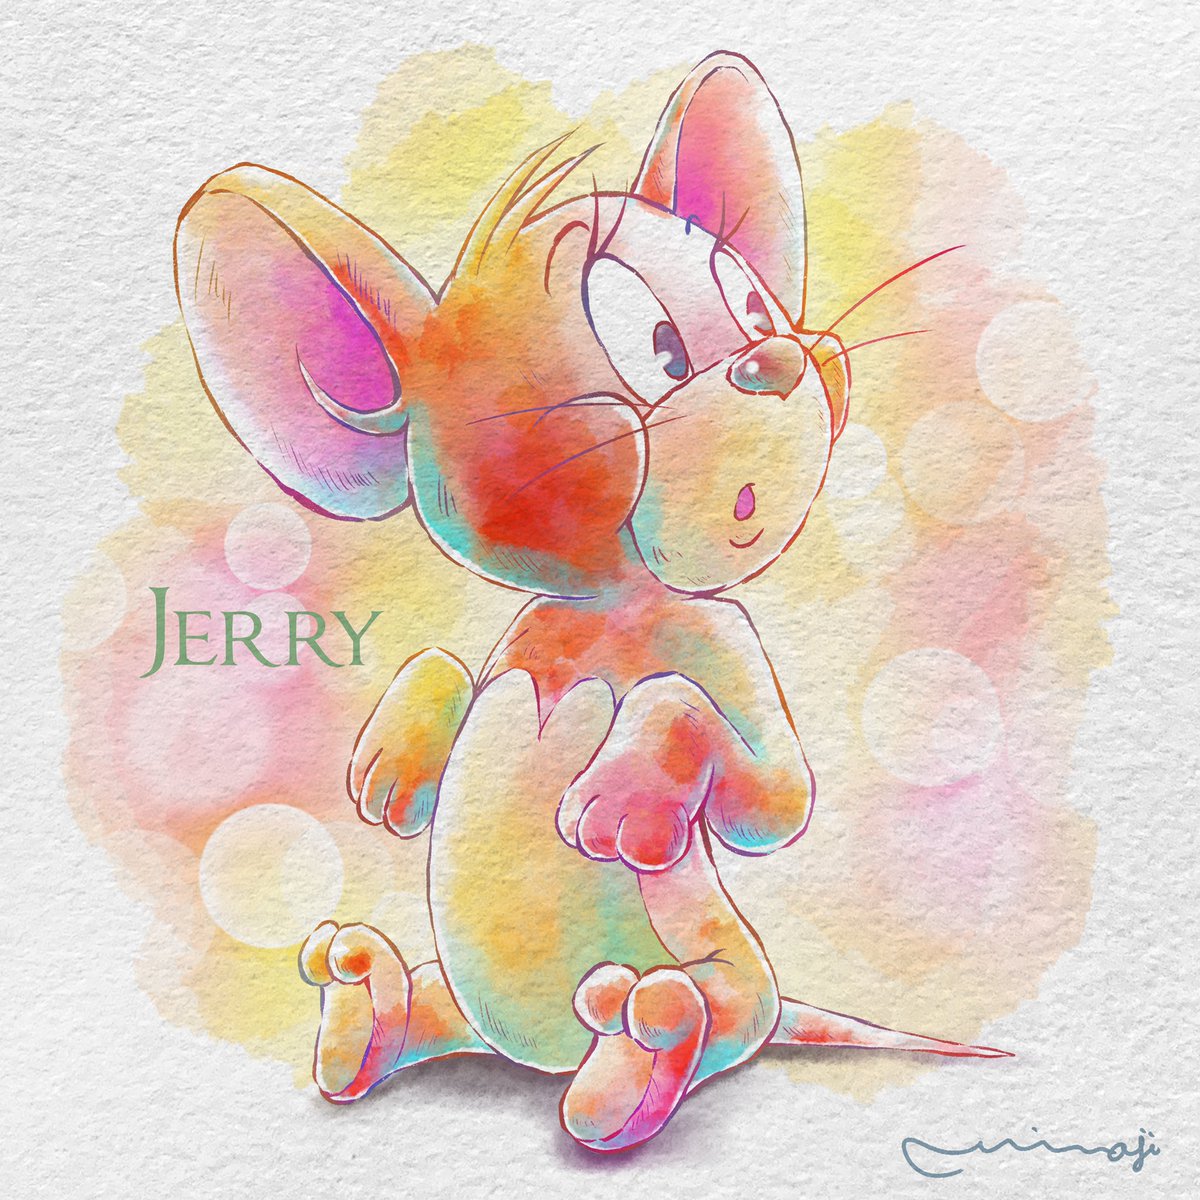 Miwajiアレンジでジェリーを描きました まつ毛がとっても可愛いジェリーに Miwaji のイラスト